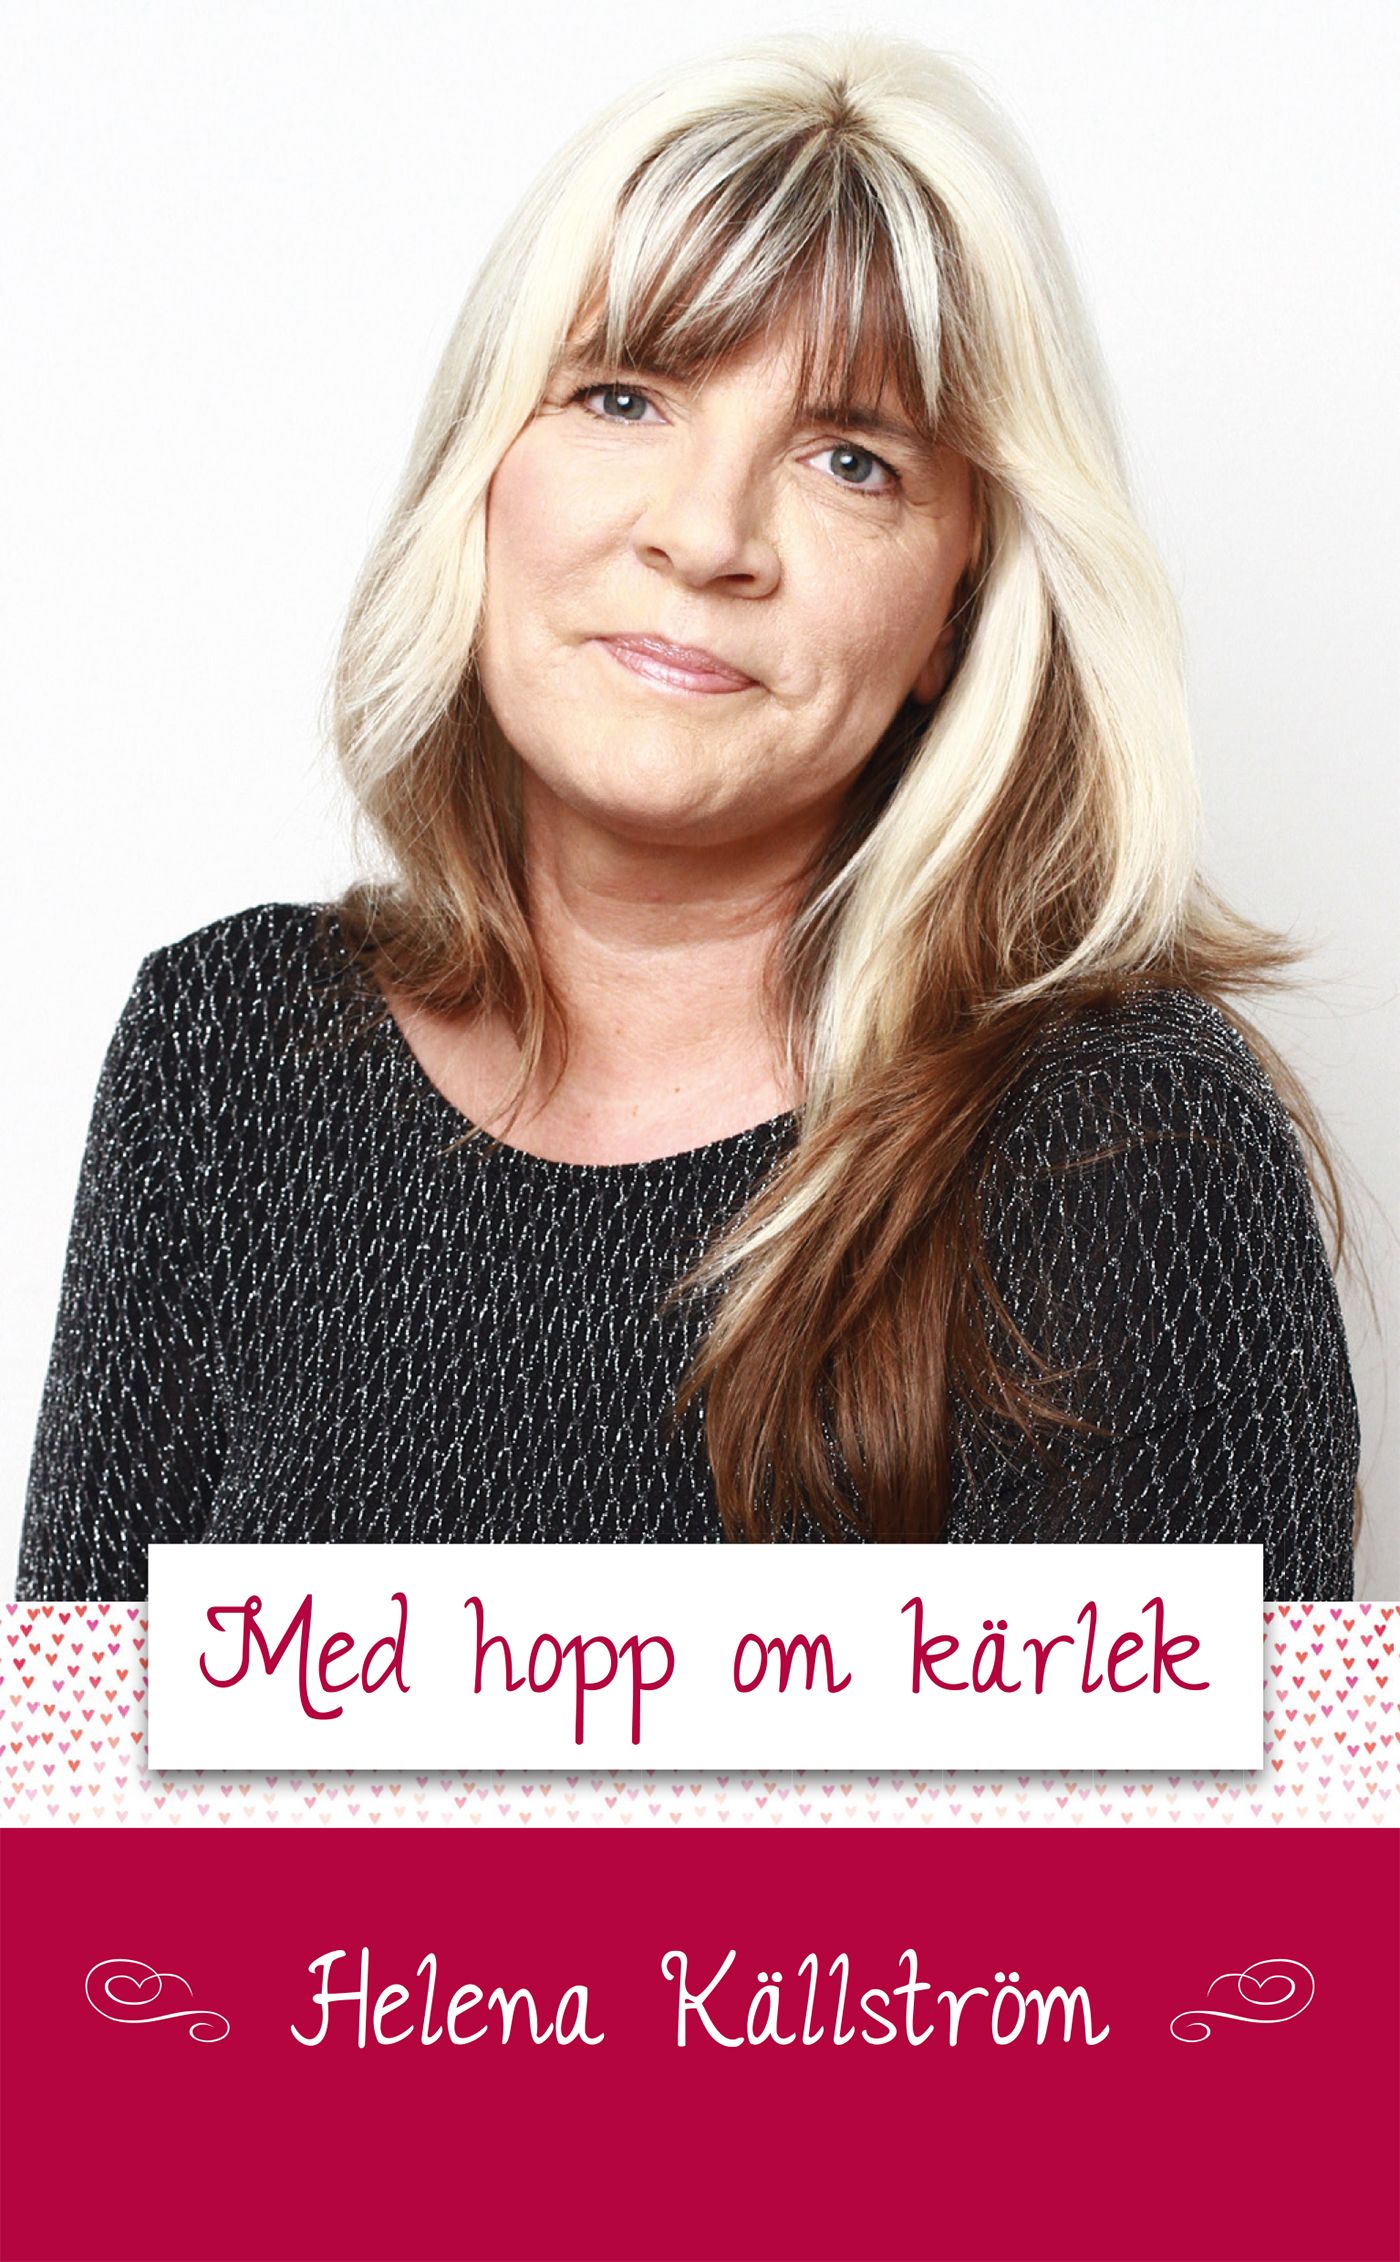 Med hopp om kärlek, e-bok av Helena Källström